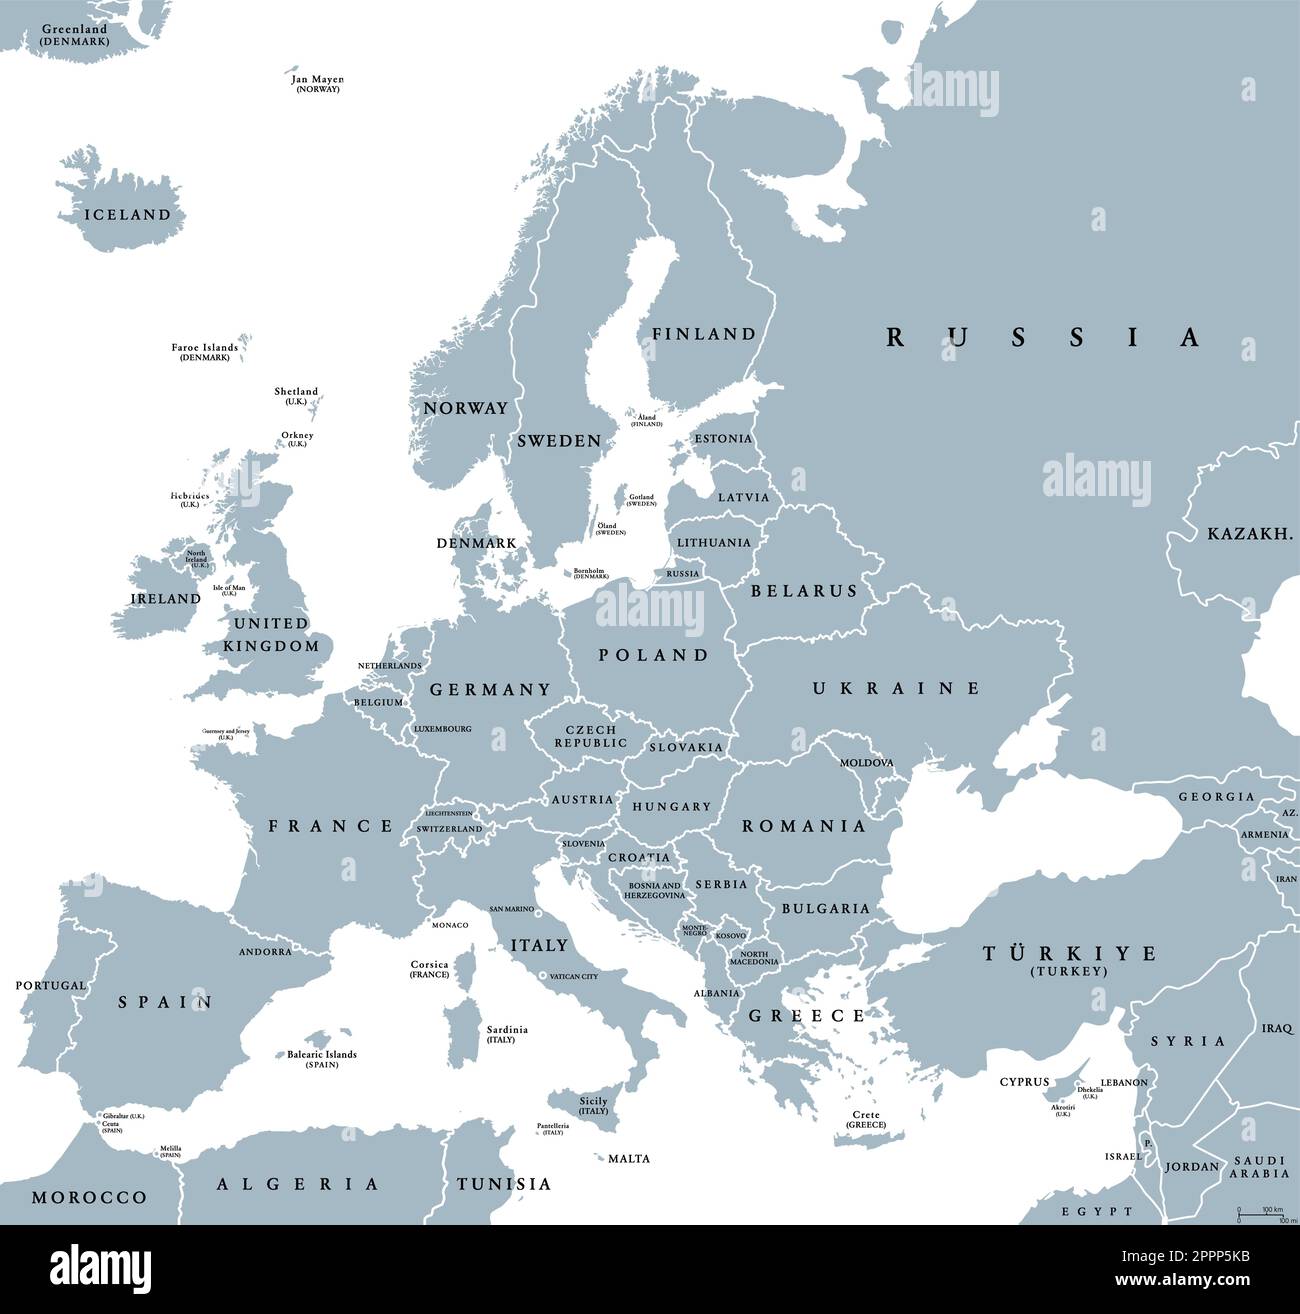 Europa mit einem Teil des Nahen Ostens, Westeurasien, graue politische Karte Stock Vektor